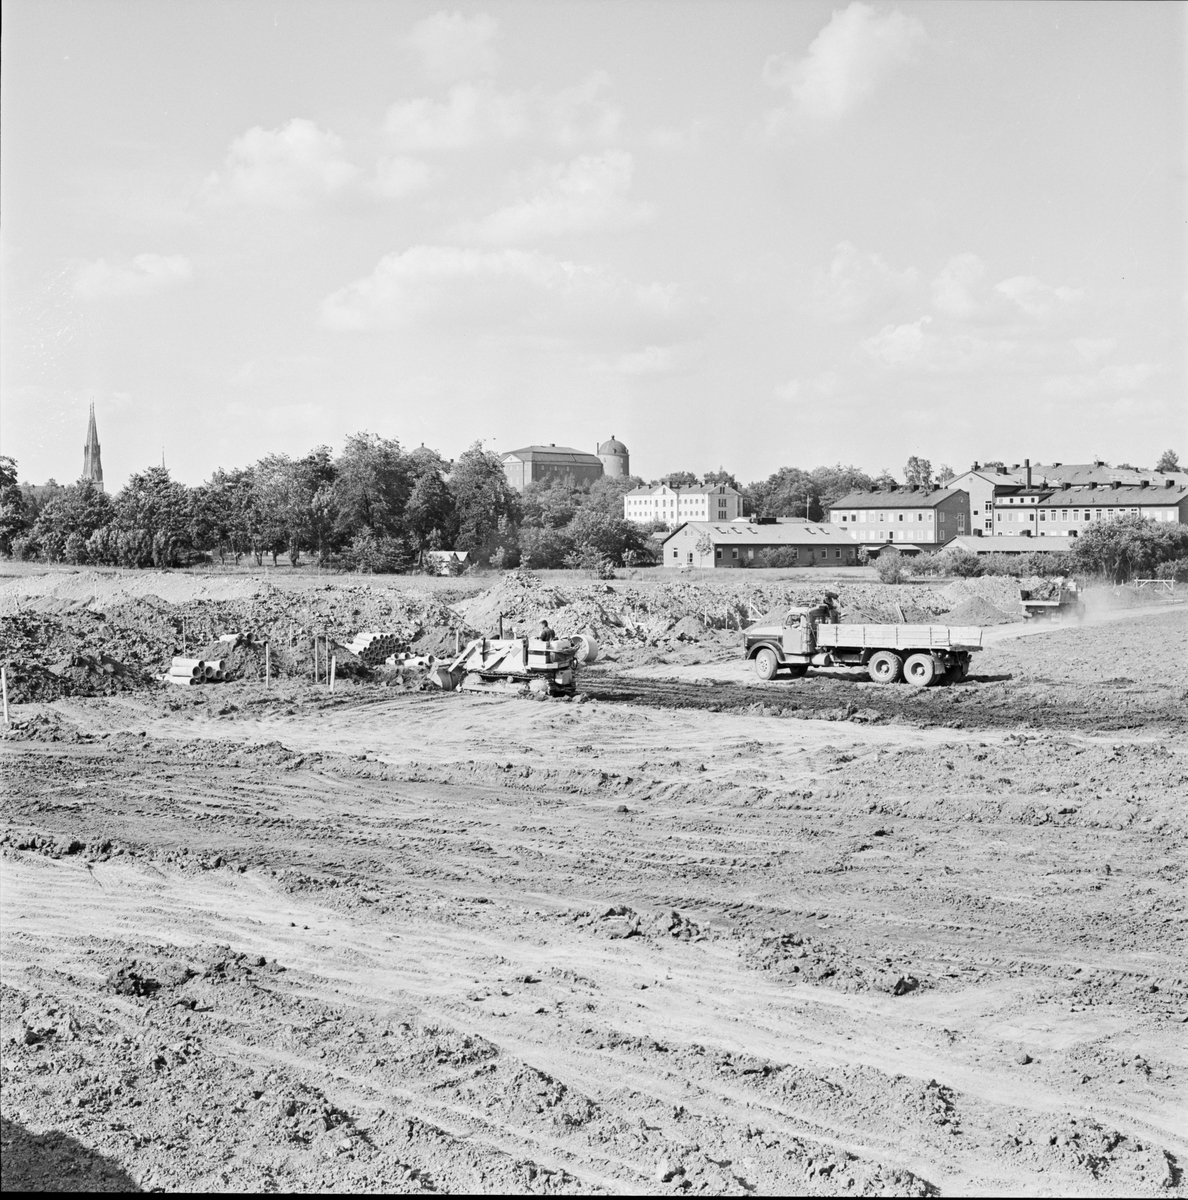 "380 nya studentrum i Kåbo", Uppsala 1964